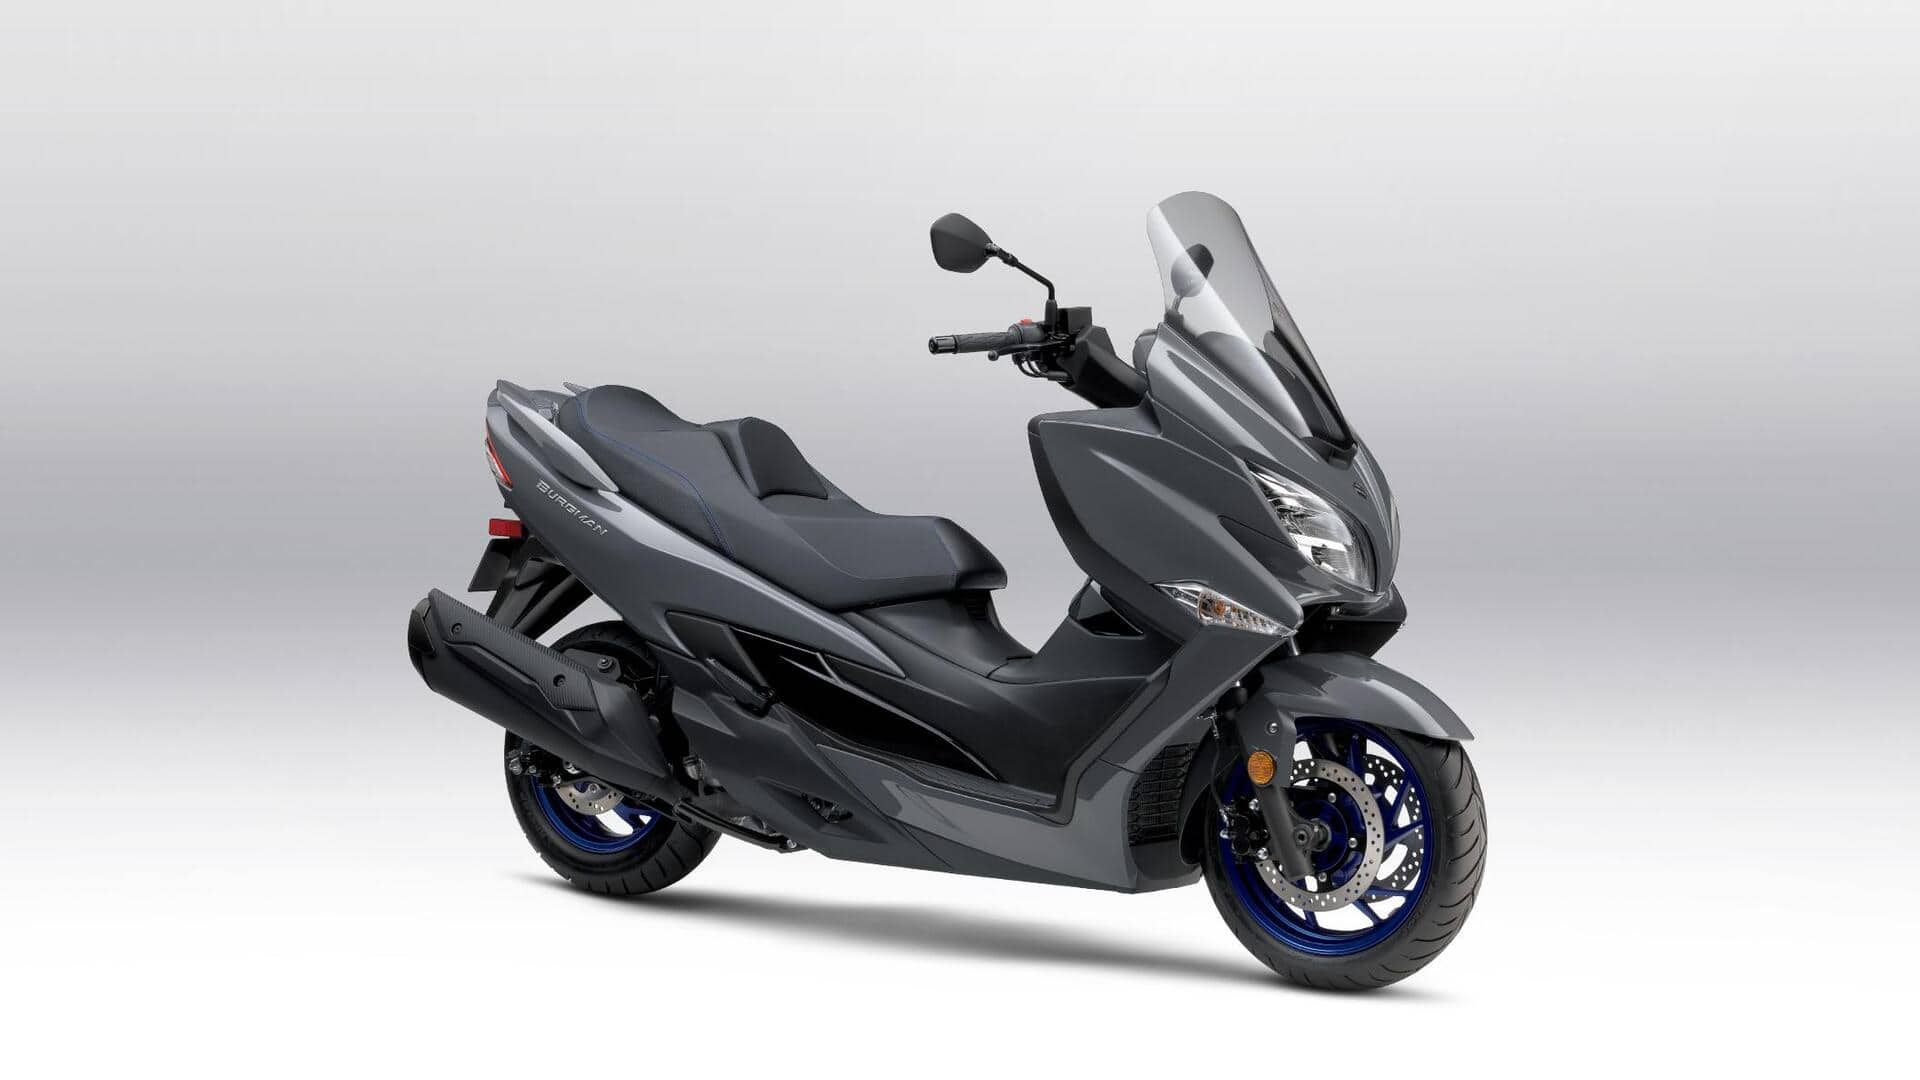 Suzuki showcases hydrogen-powered Burgman maxi-scooter: Check features, design